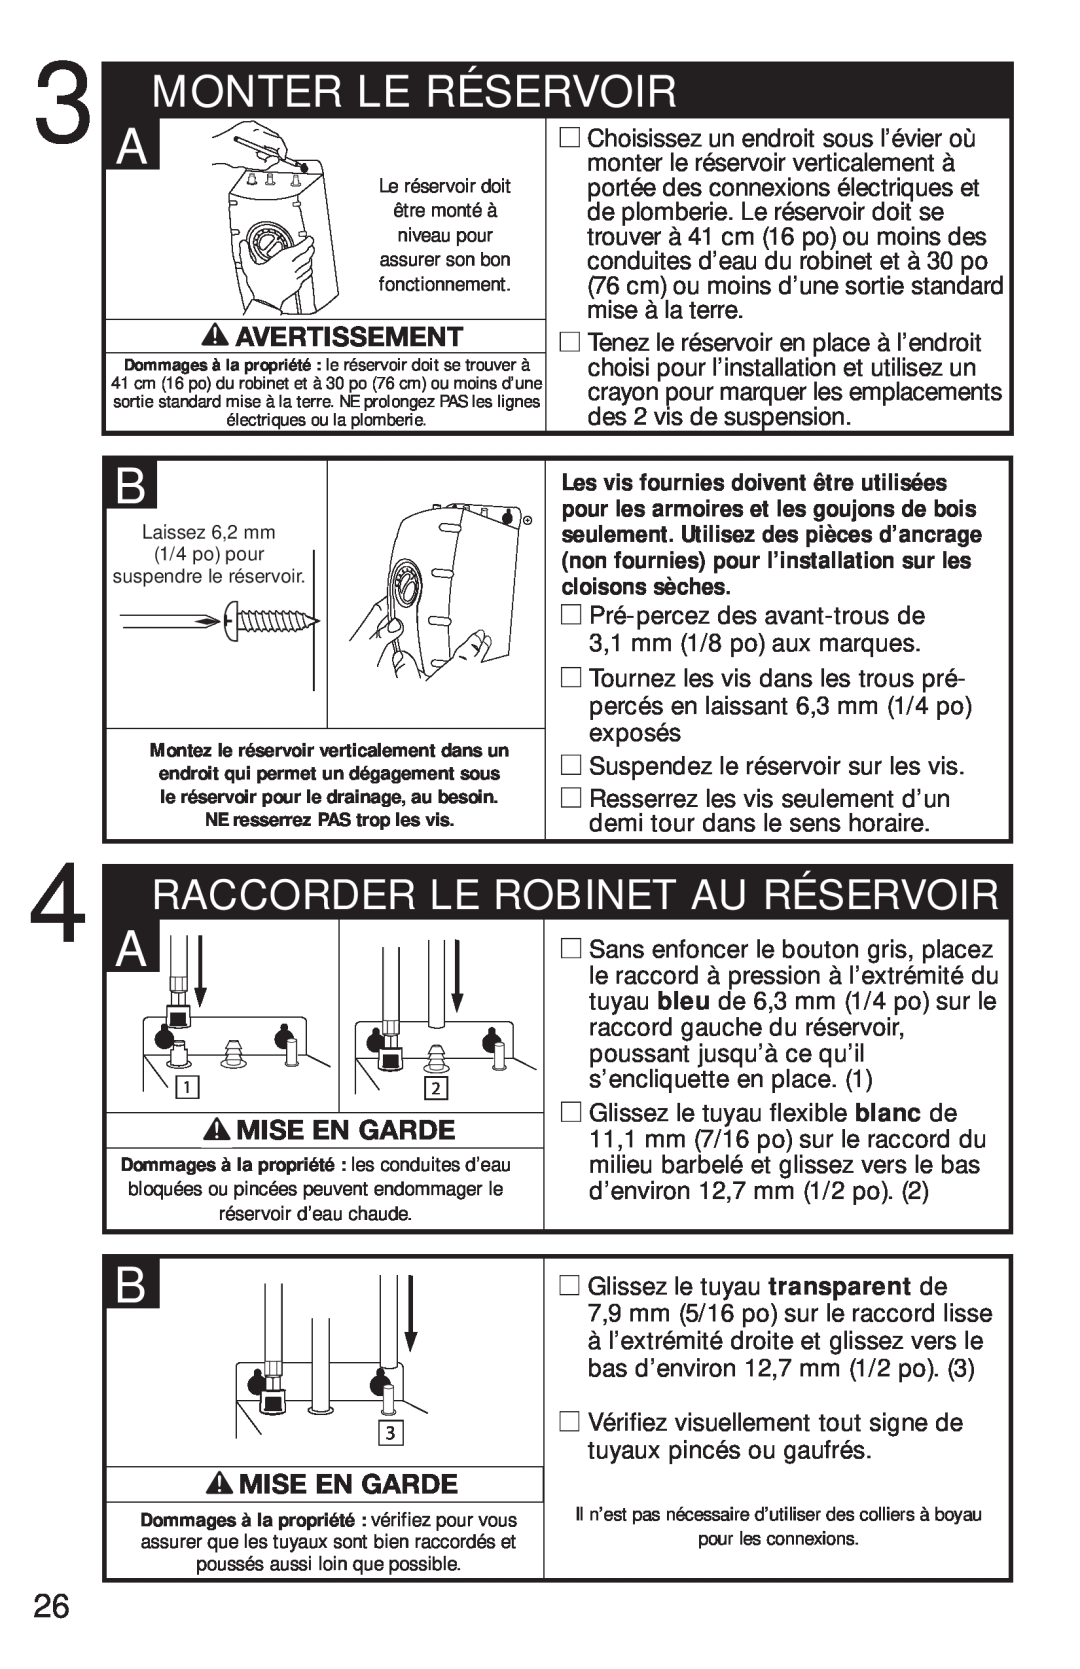 InSinkErator FAUCET owner manual Monter Le Réservoir, Avertissement, Raccorder Le Robinet Au Réservoir, Mise En Garde 